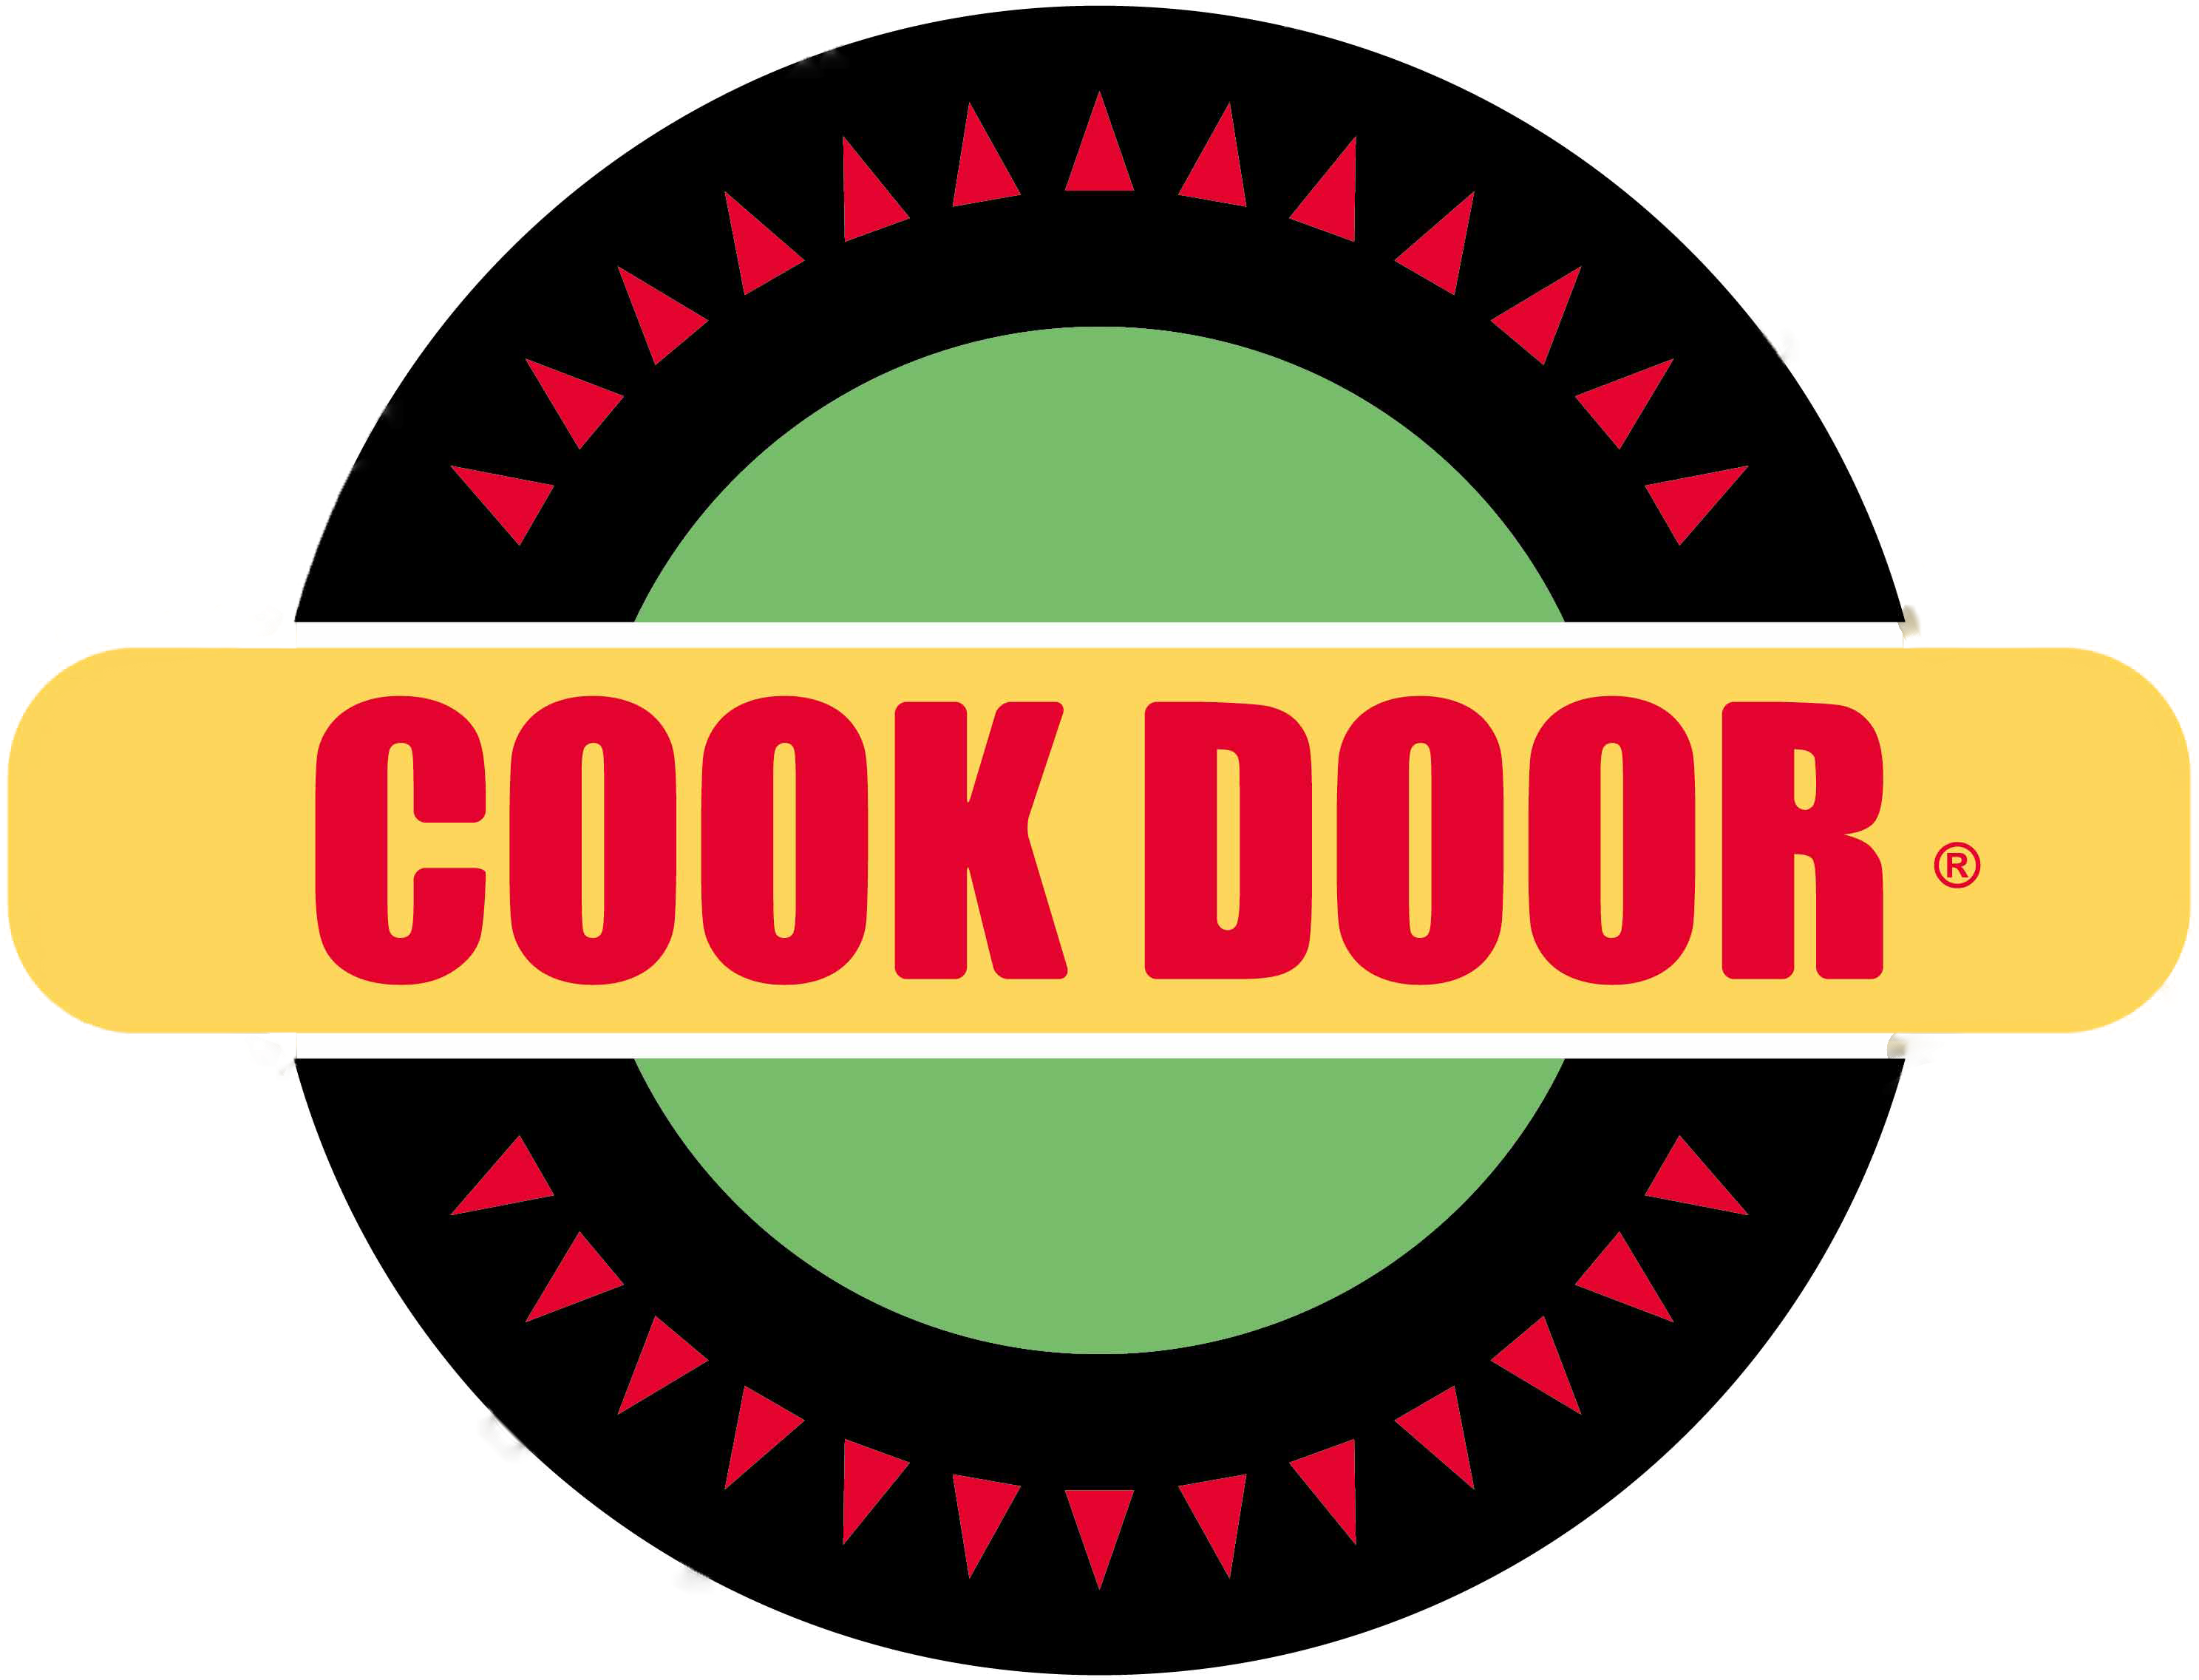 Cook Door - Cock Door (3008x2640)